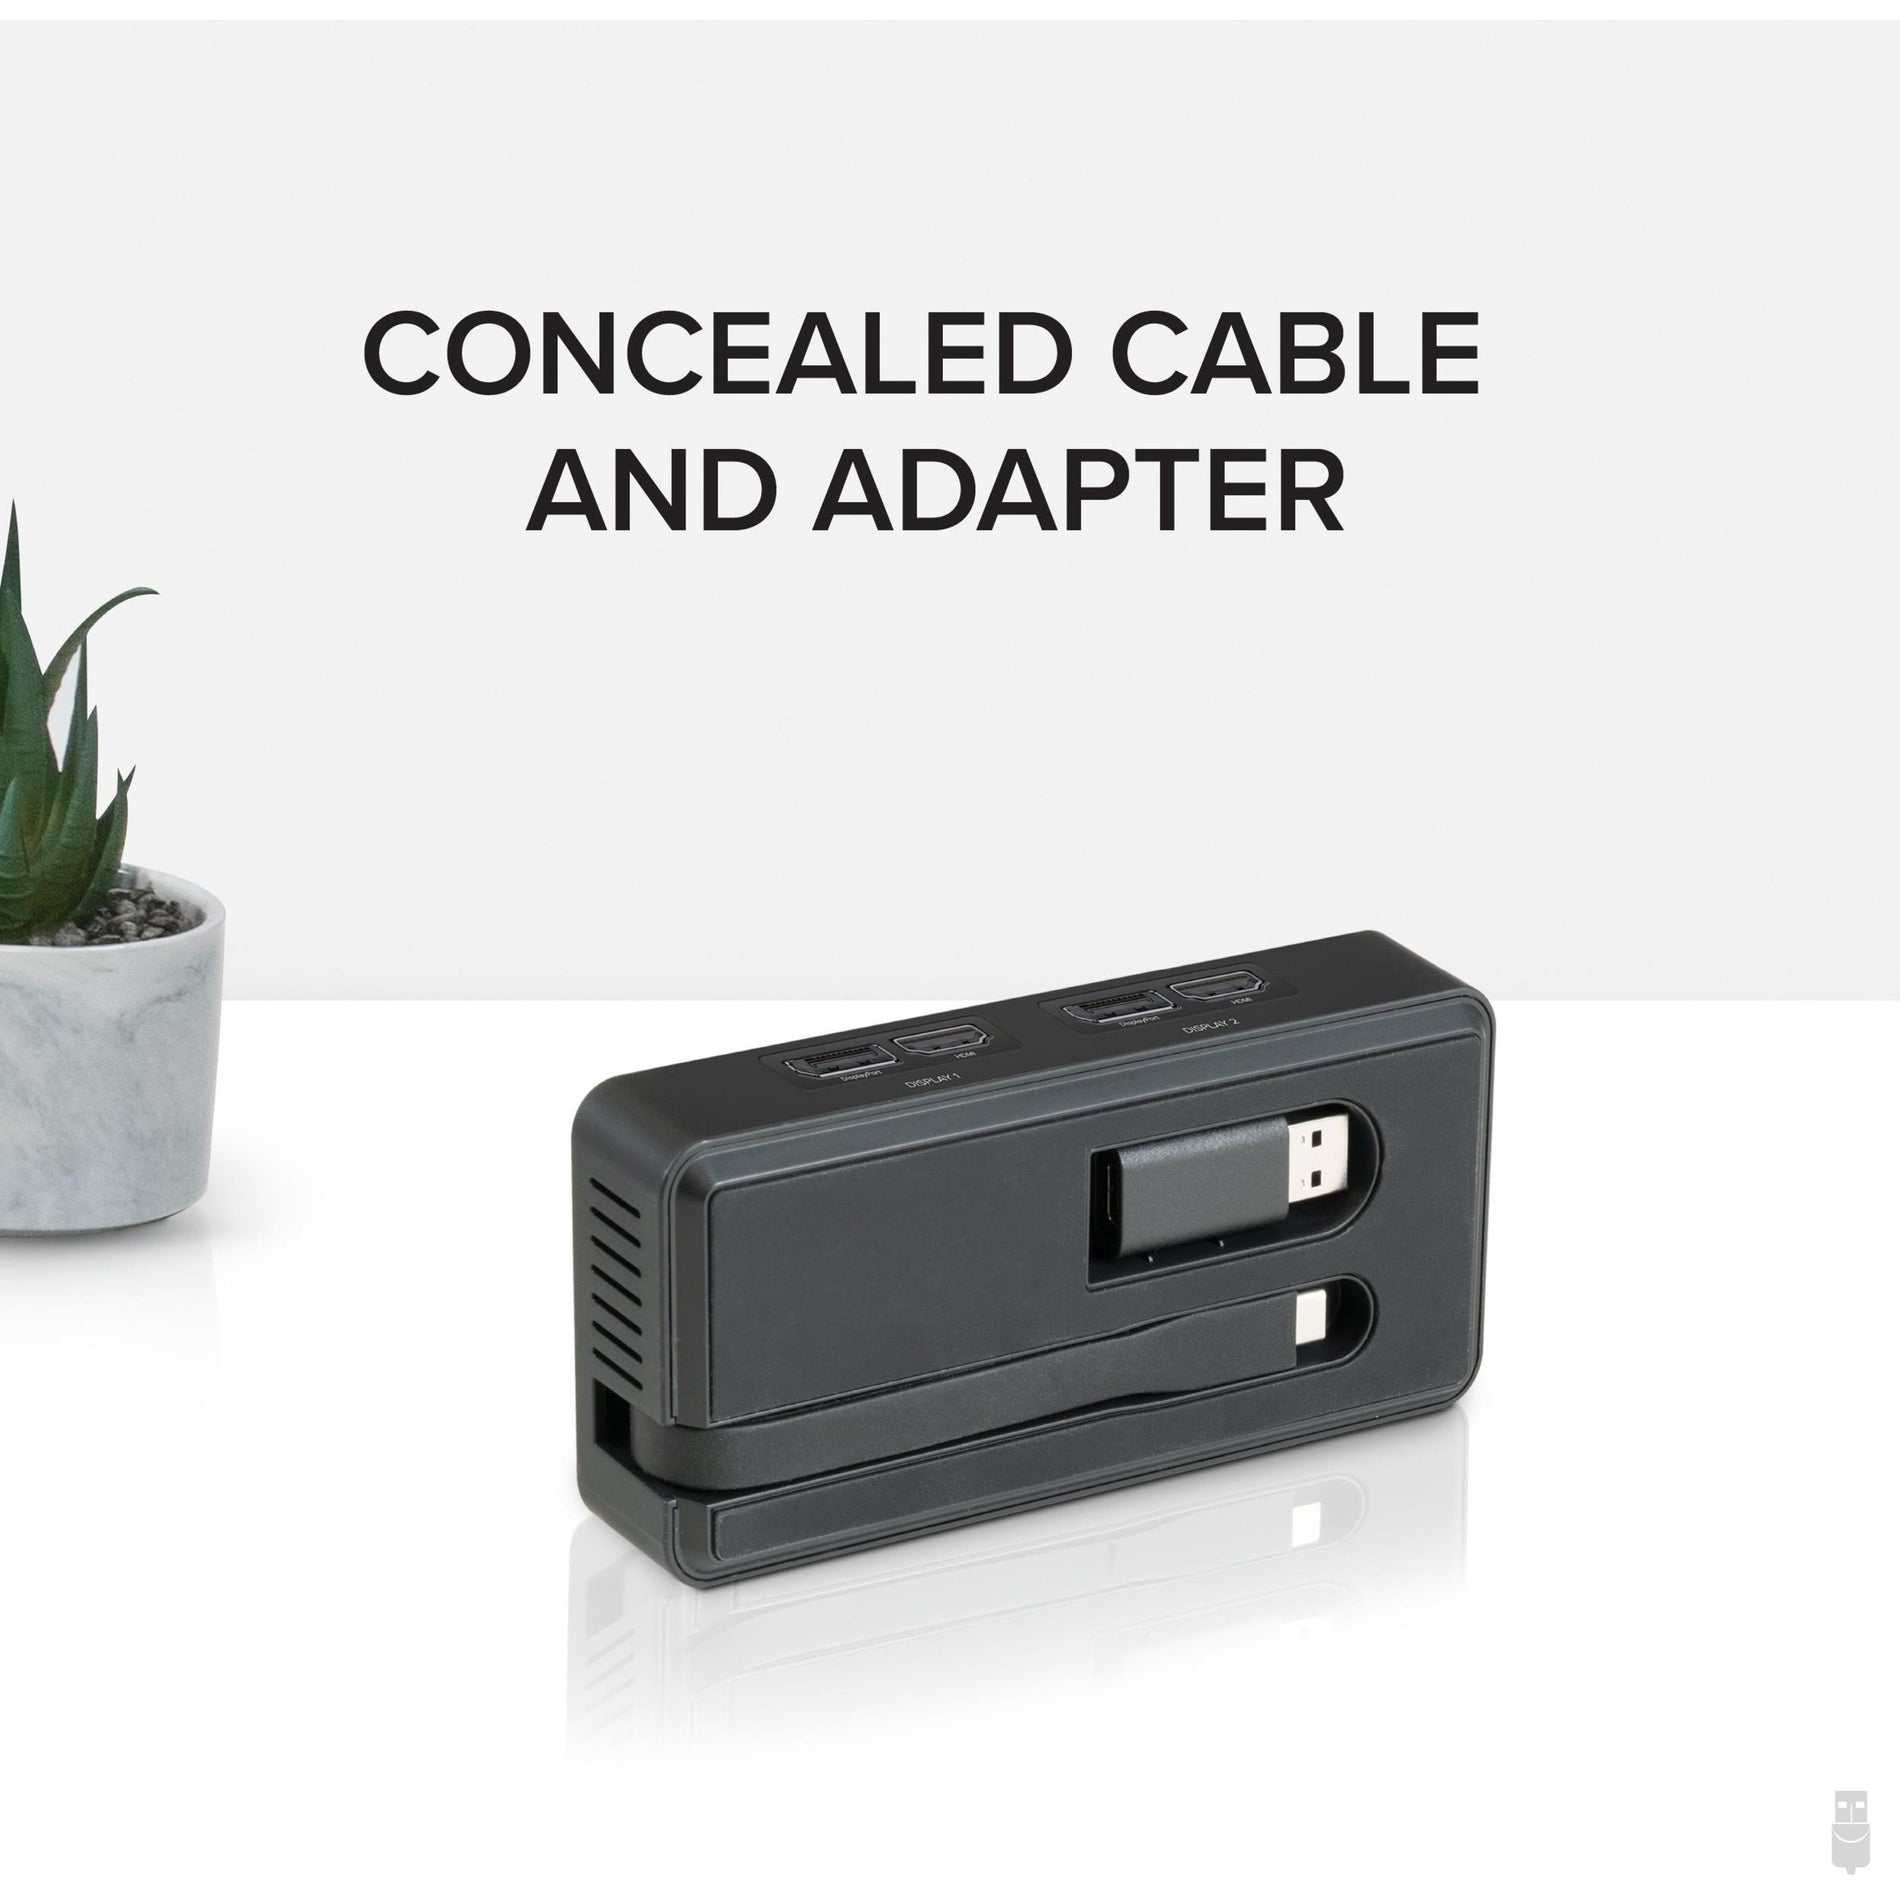 Adaptador Plugable USBC-6950UE USB Tipo C Doble 4K HDMI y Ethernet Gigabit Conecta Dos Monitores y Ethernet a tu Dispositivo USB-C. Marca: Plugable. Traduce marca.